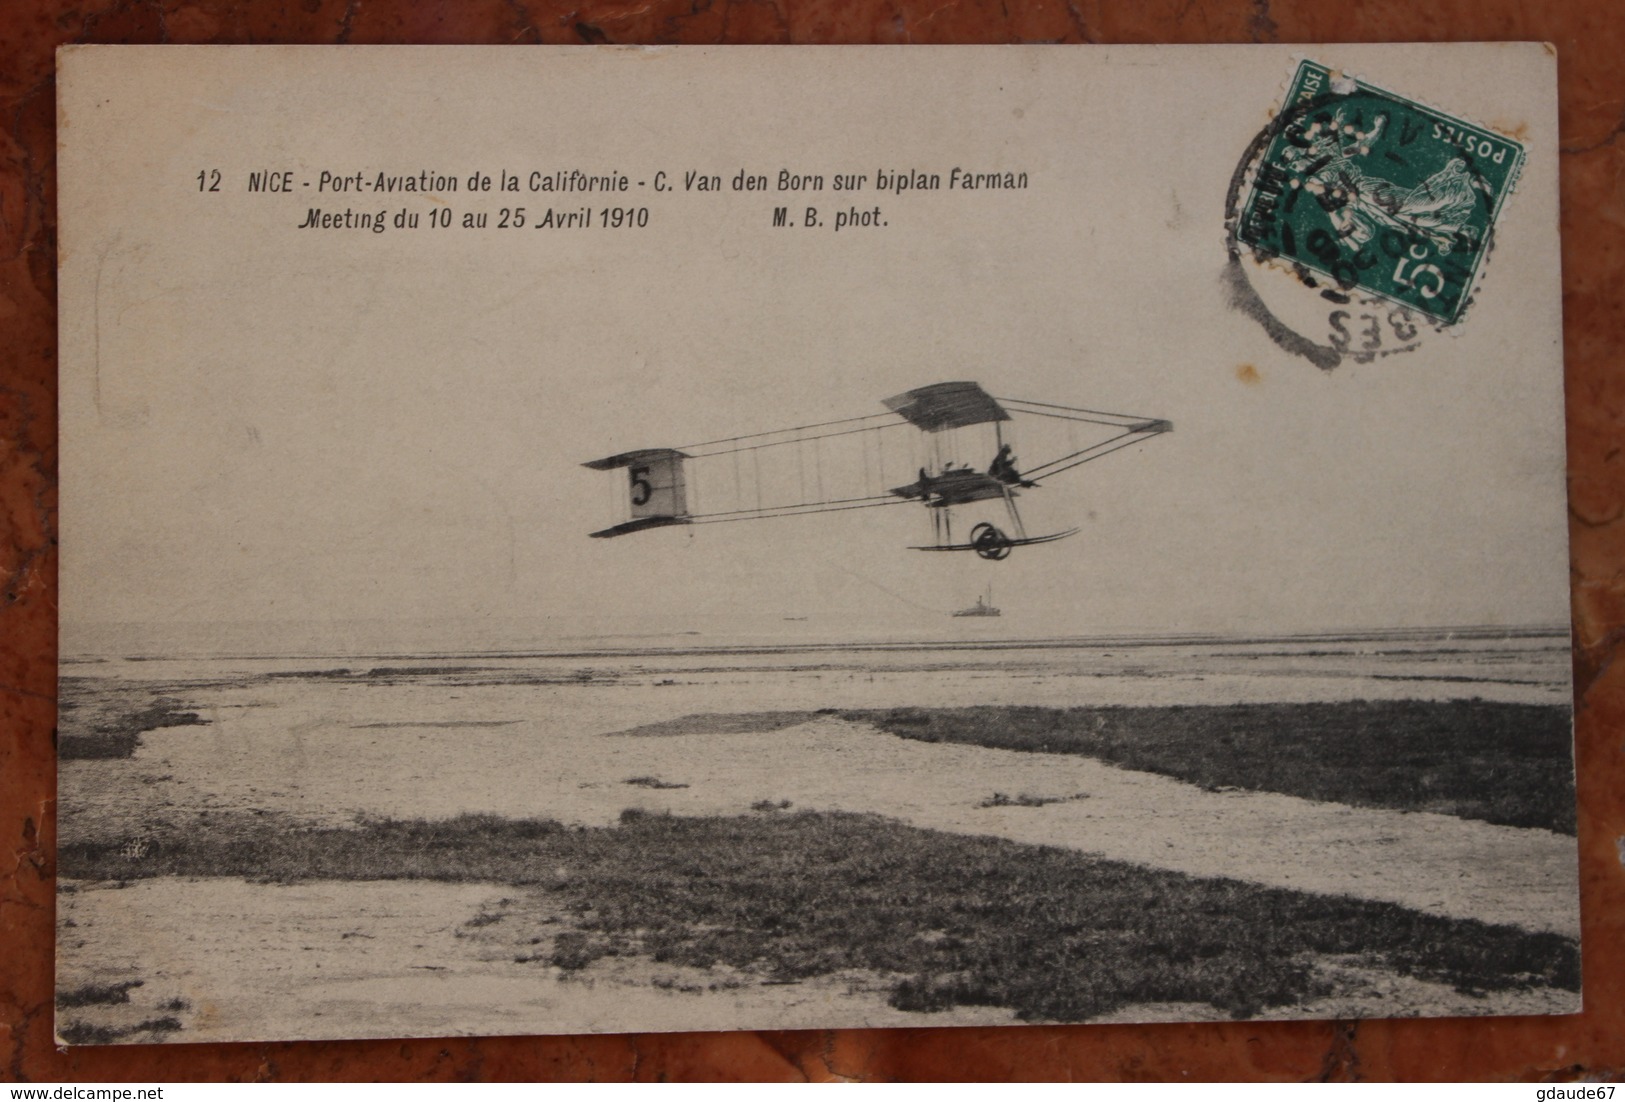 NICE (06) - PORT AVIATION DE LA CALIFORNIE - VAN DEN BORN SUR BIPLAN FARMAN - MEETING 1910 - Transport Aérien - Aéroport